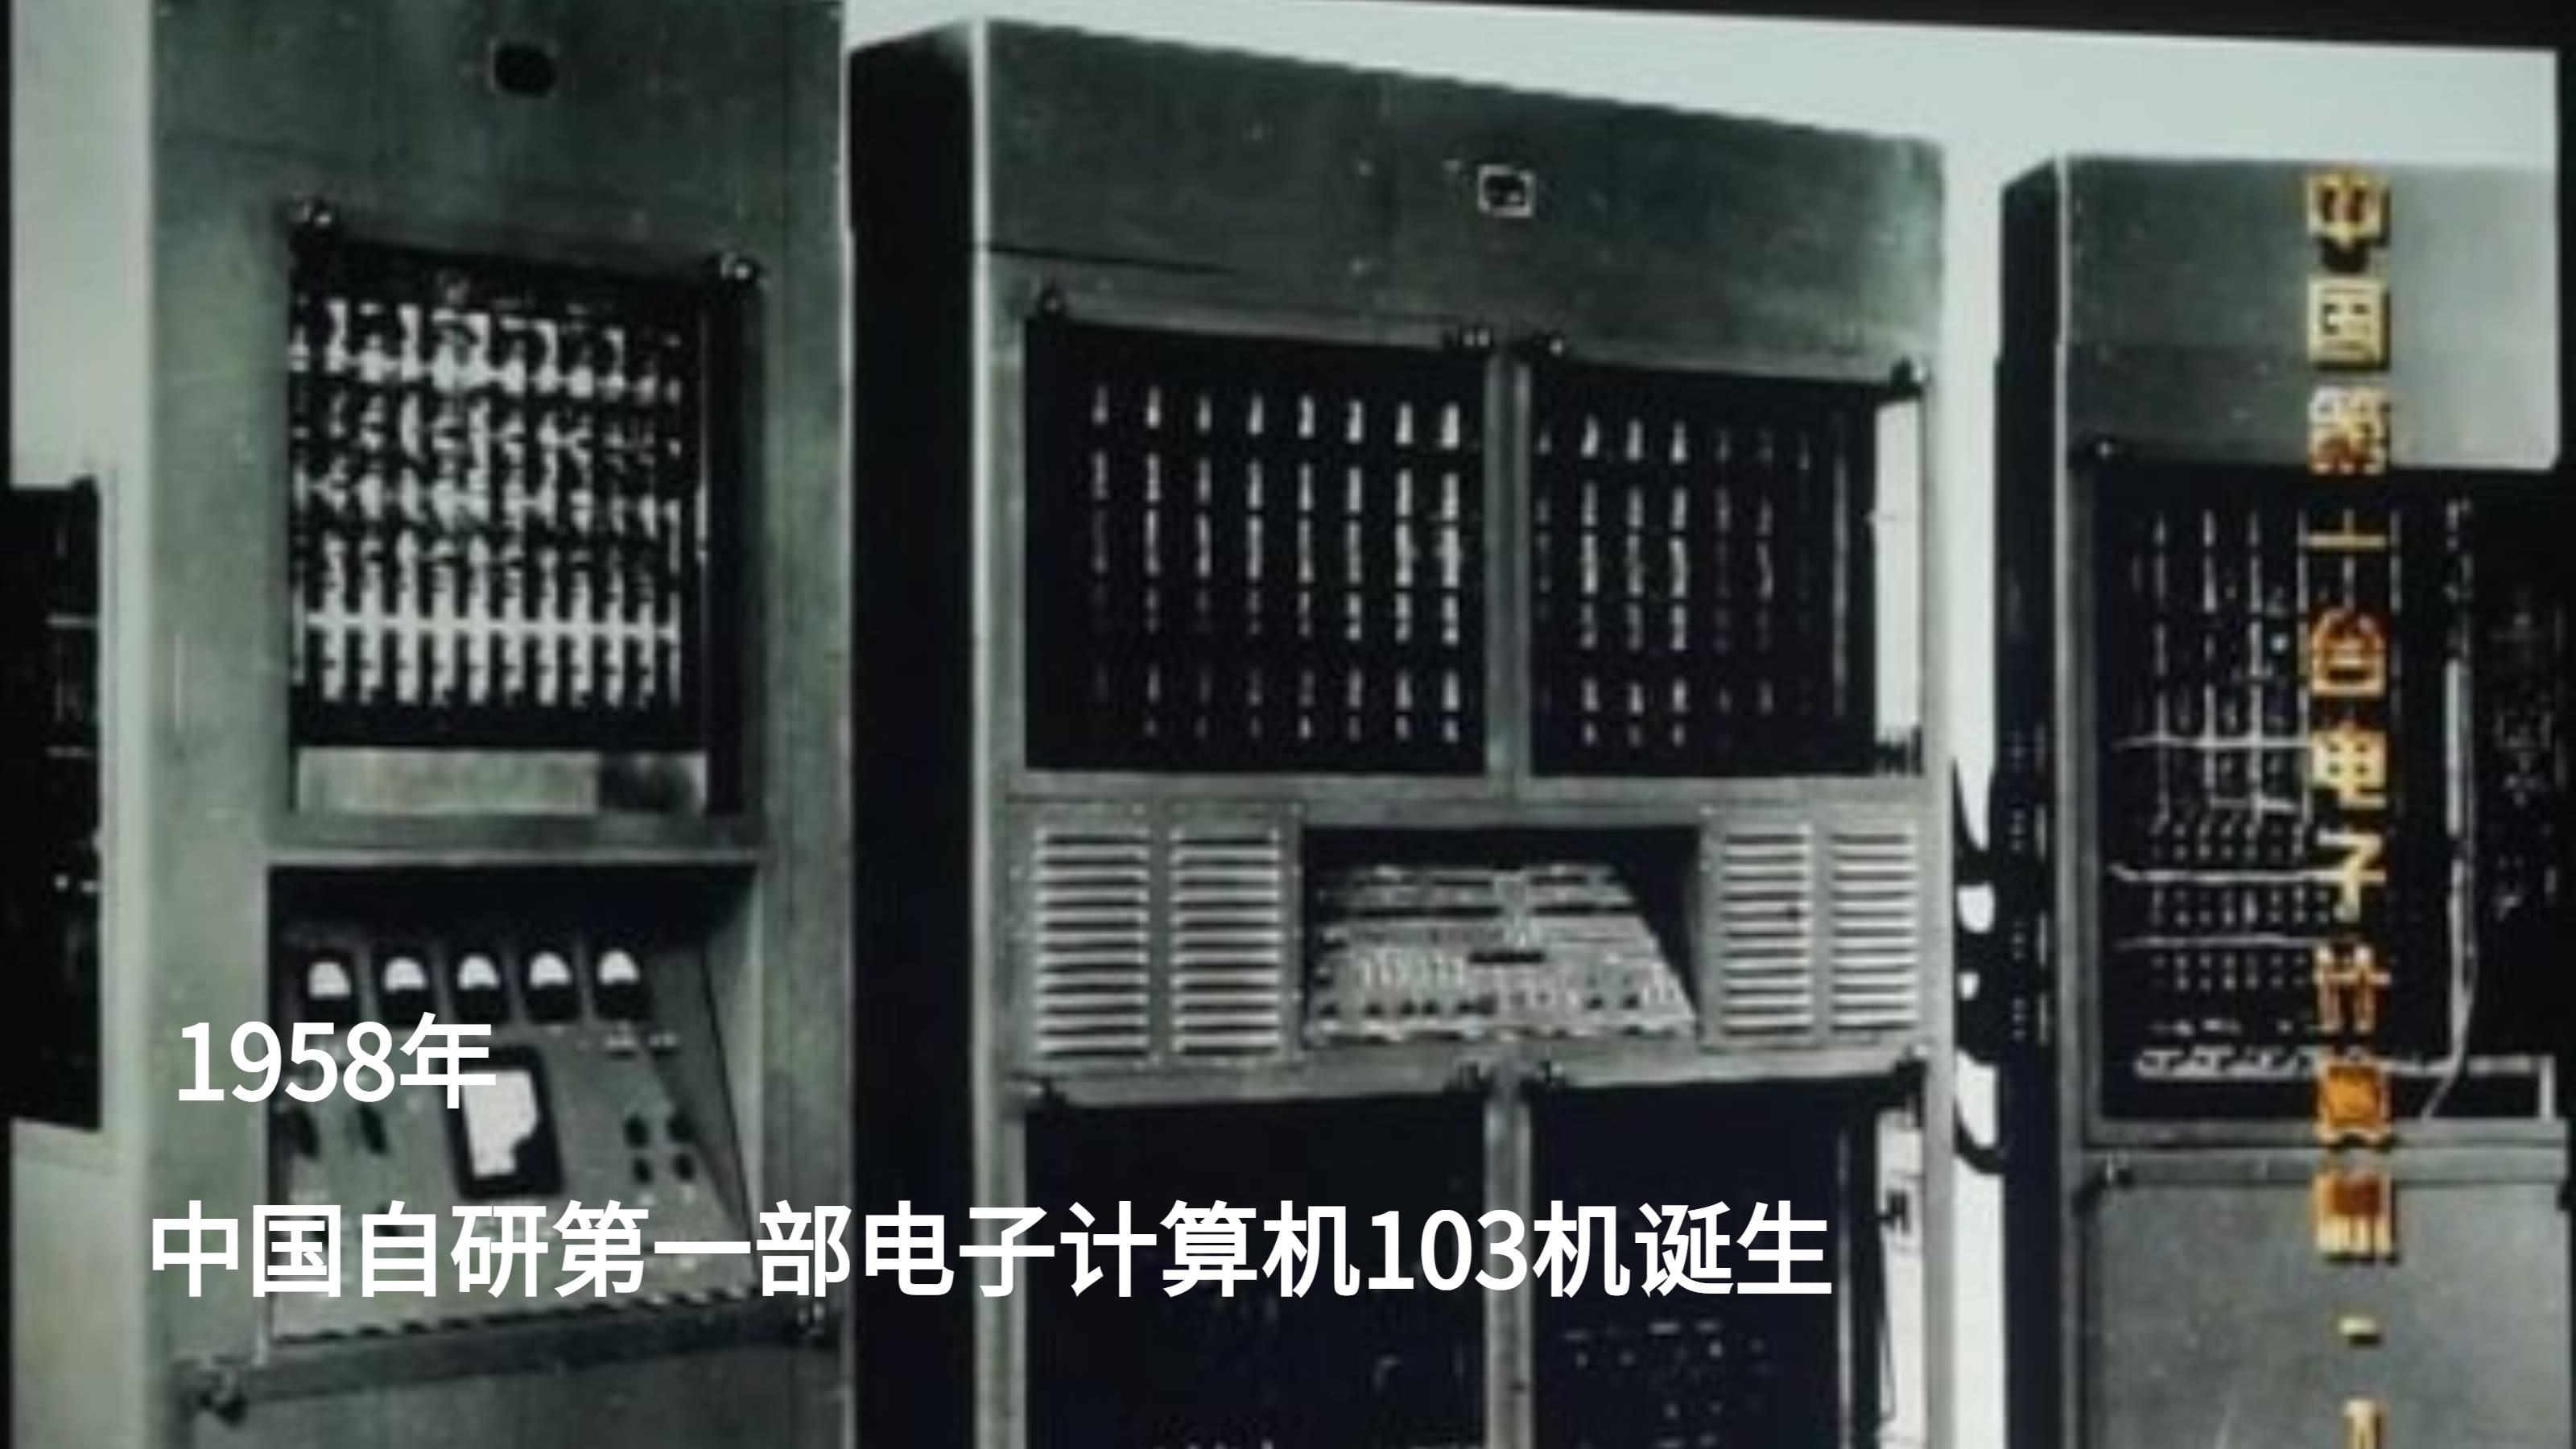 1958年,中国自研的第一部电子计算机诞生1964年,中国自研的第一枚原子